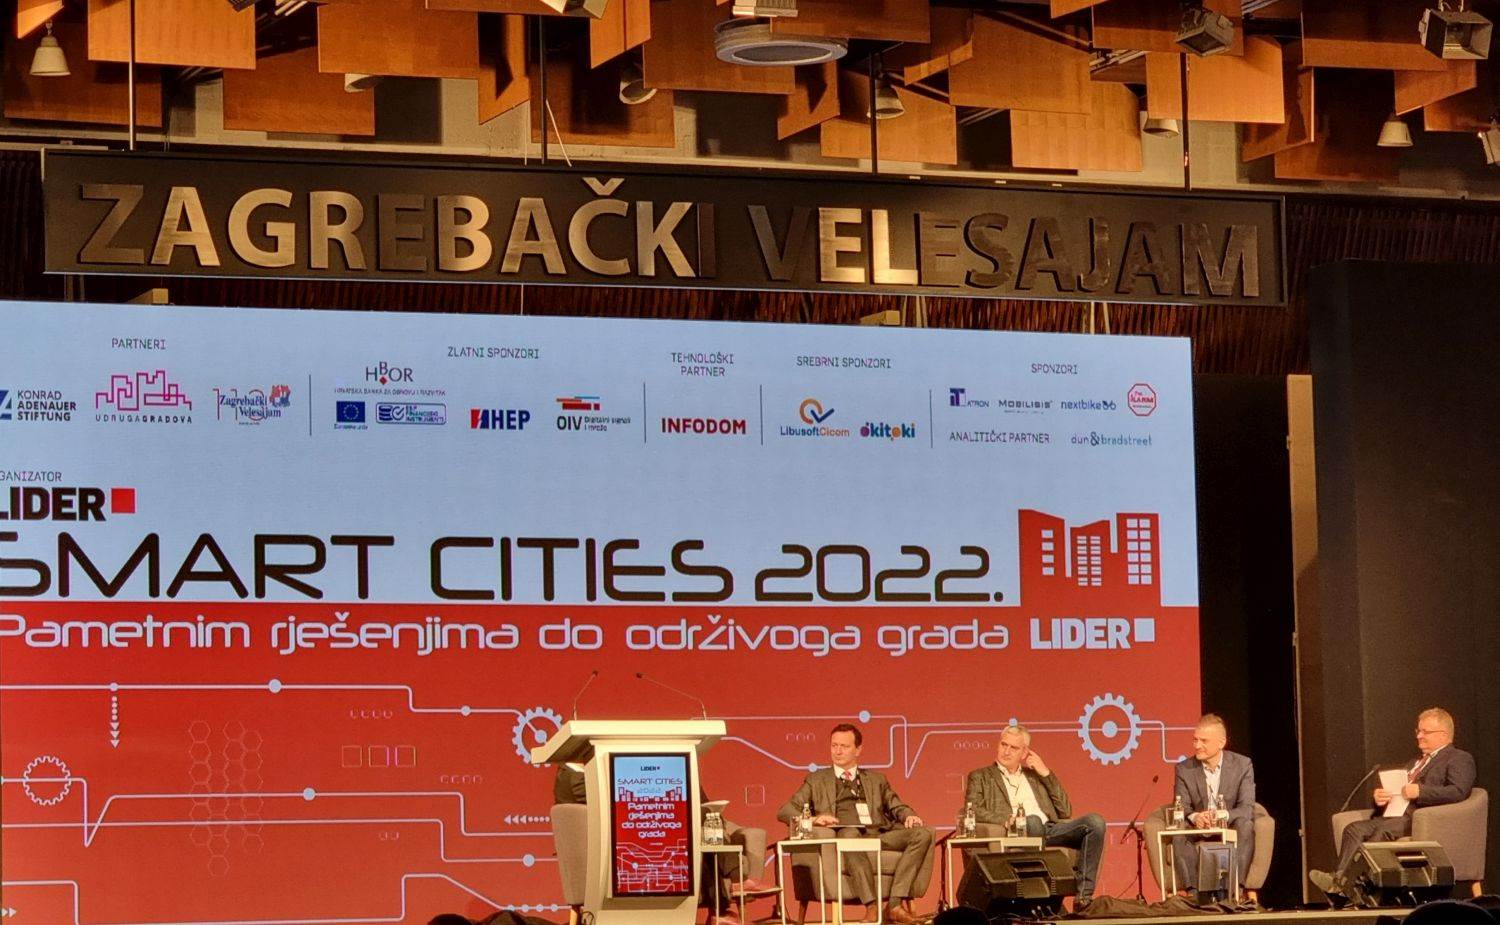  Smart Cities 2022.jpg 